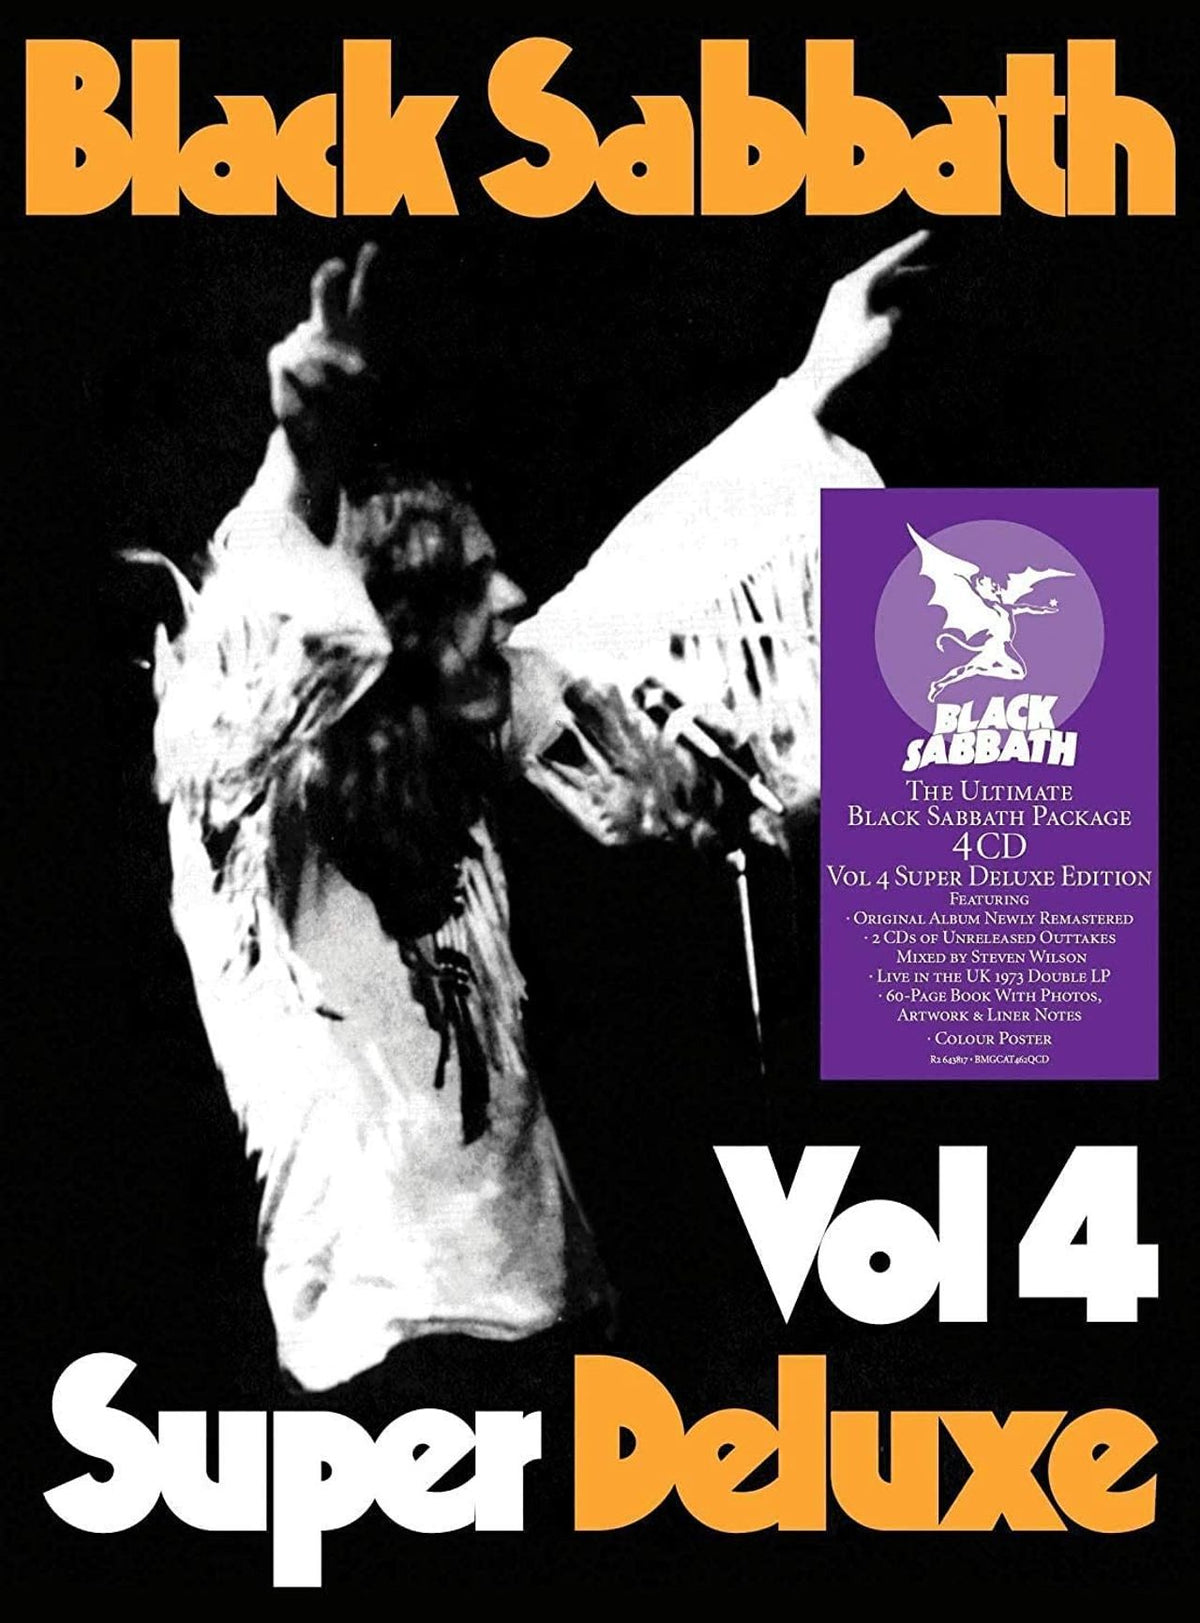 Black Sabbath Vol. 4 - Super Deluxe Edition (4CD) - Sealed UK Cd album box  set